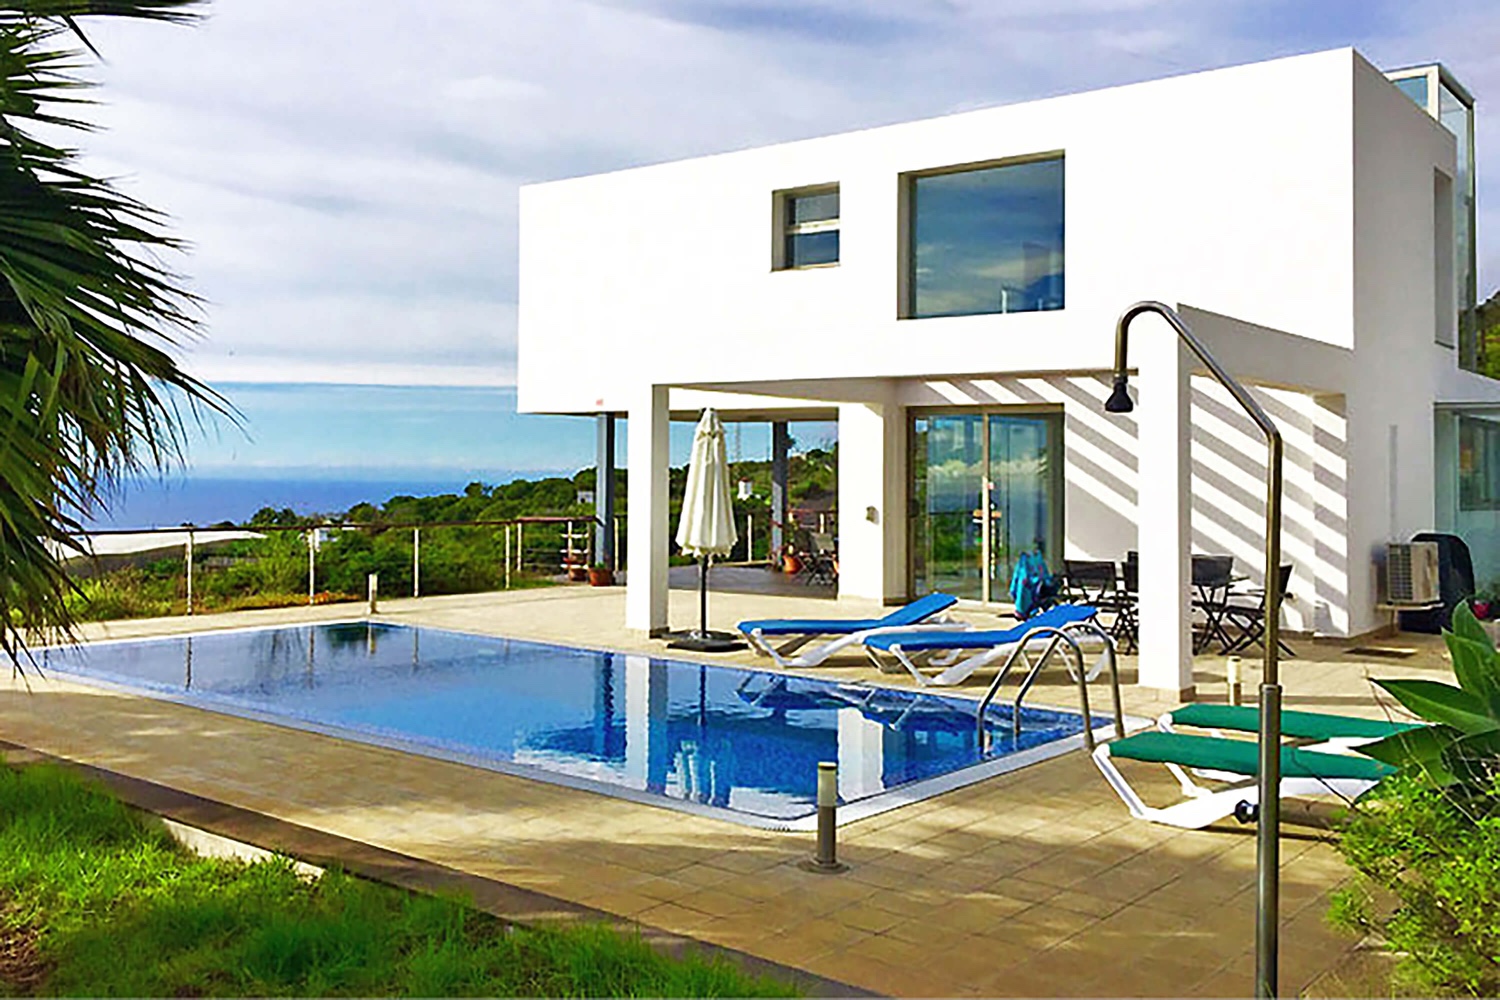 Luxusní rekreační dům k pronájmu na La Palma s moderní architekturou s velkým bazénem a krásným panoramatickým výhledem na moře